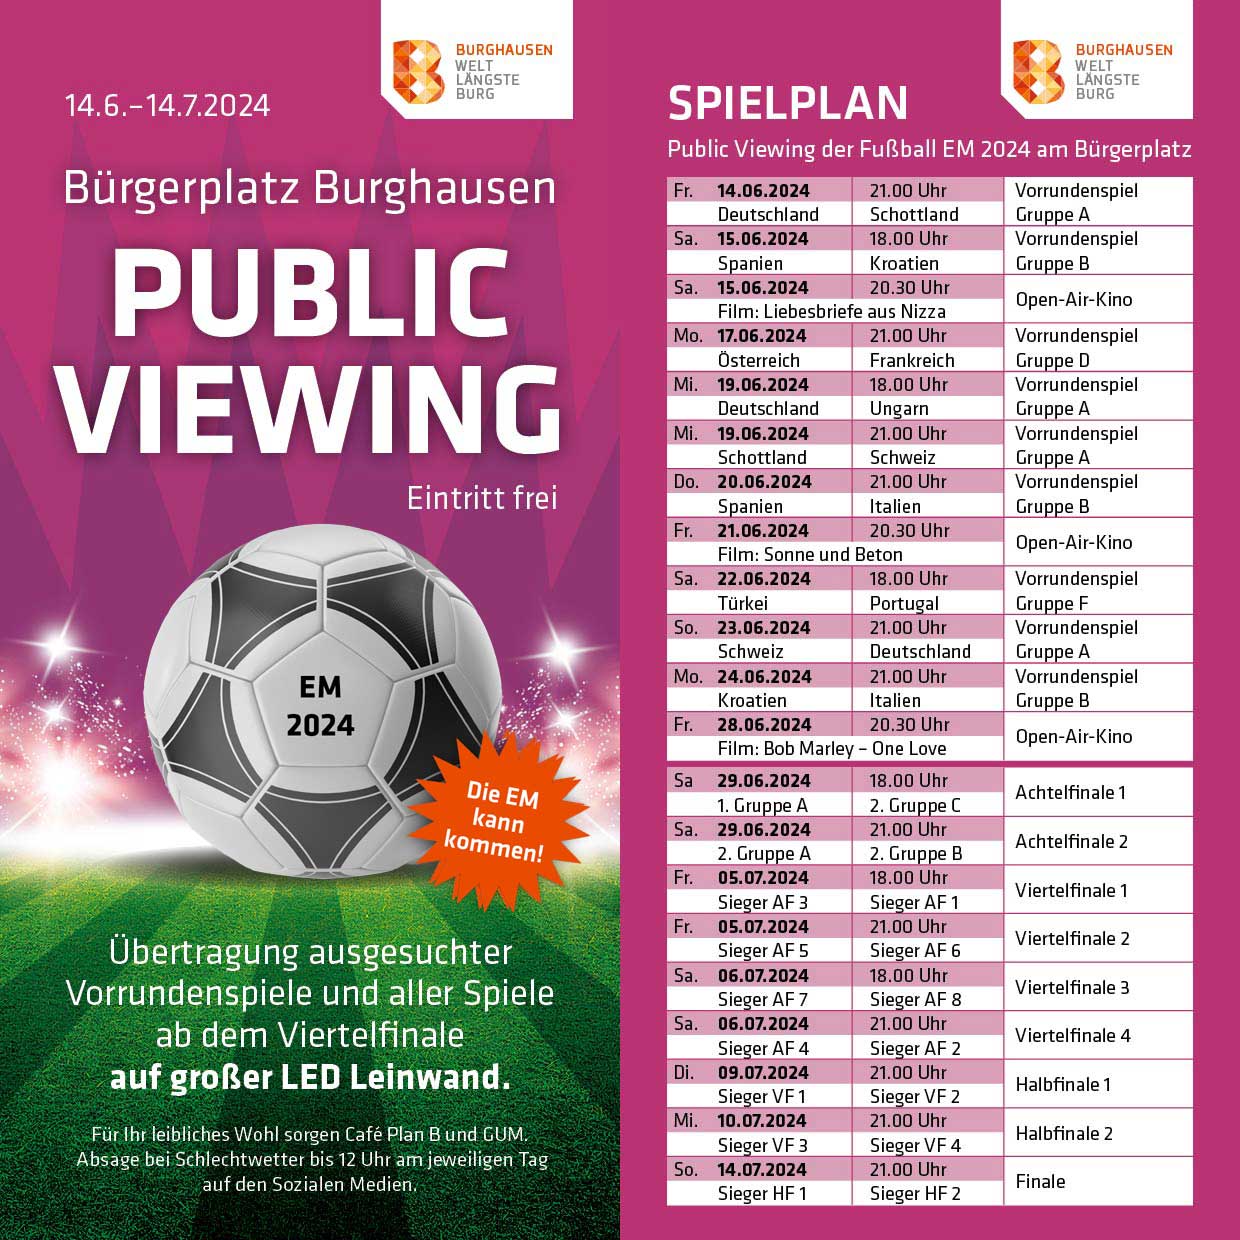 Public Viewing vom 14.6. - 14.7.2024